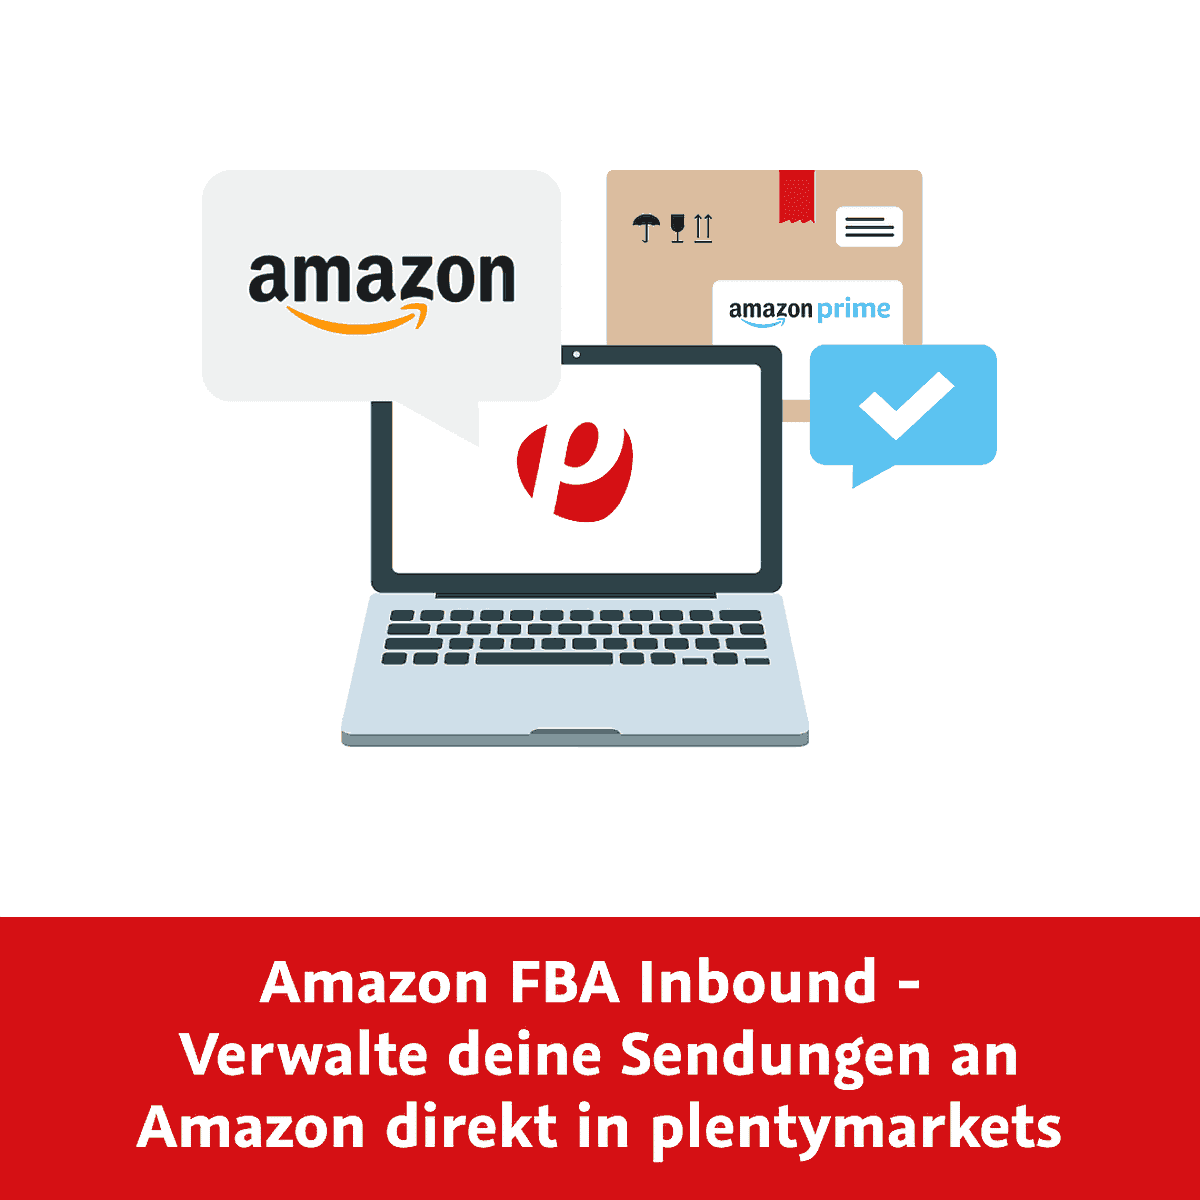 “Amazon FBA Inbound”-Schritte direkt in plentymarkets